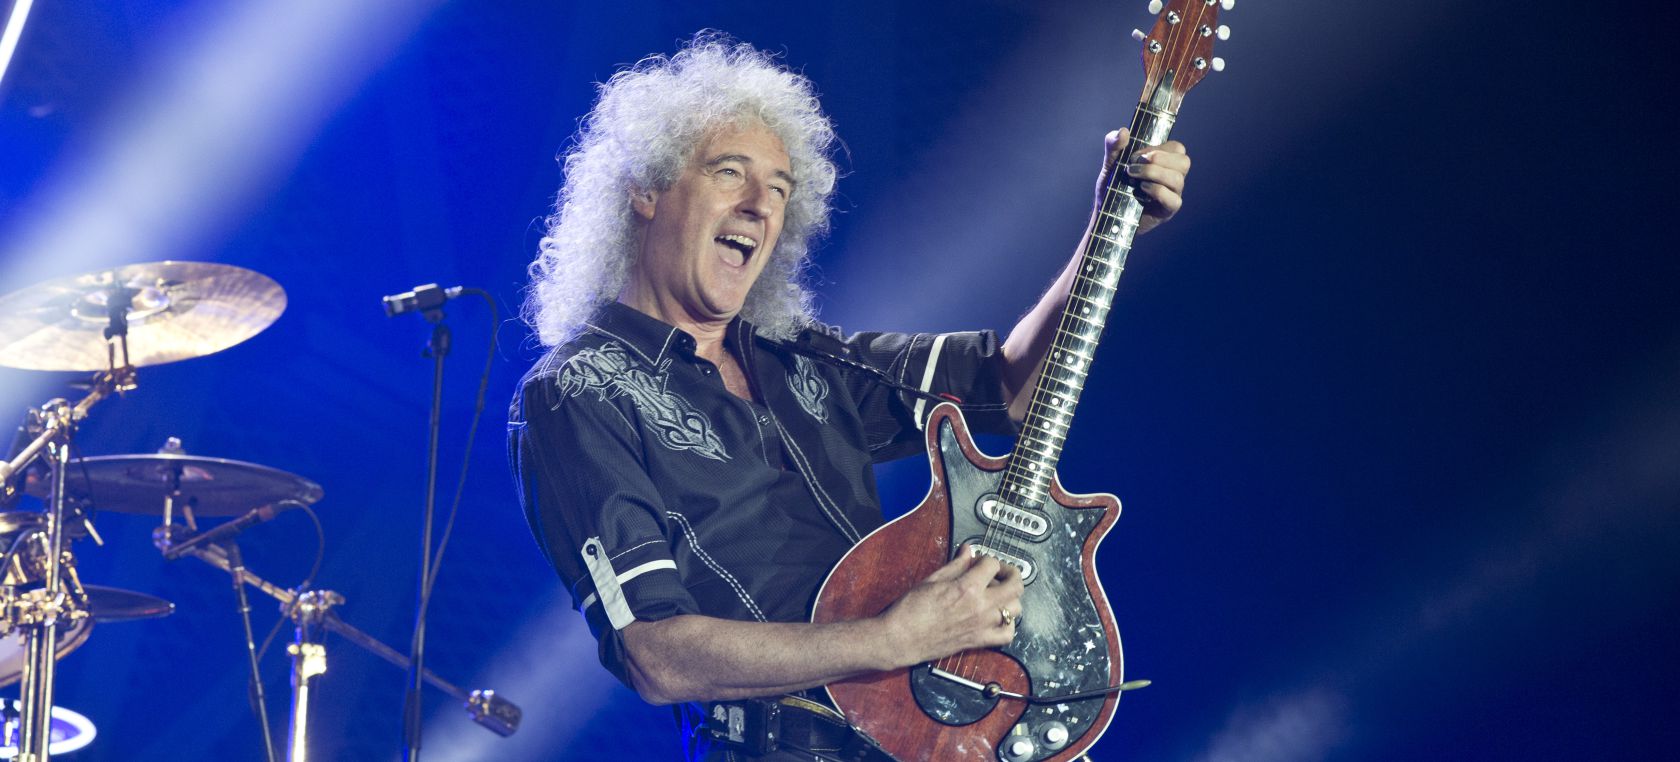 Este es el solo de guitarra favorito de Brian May, y no es de Queen